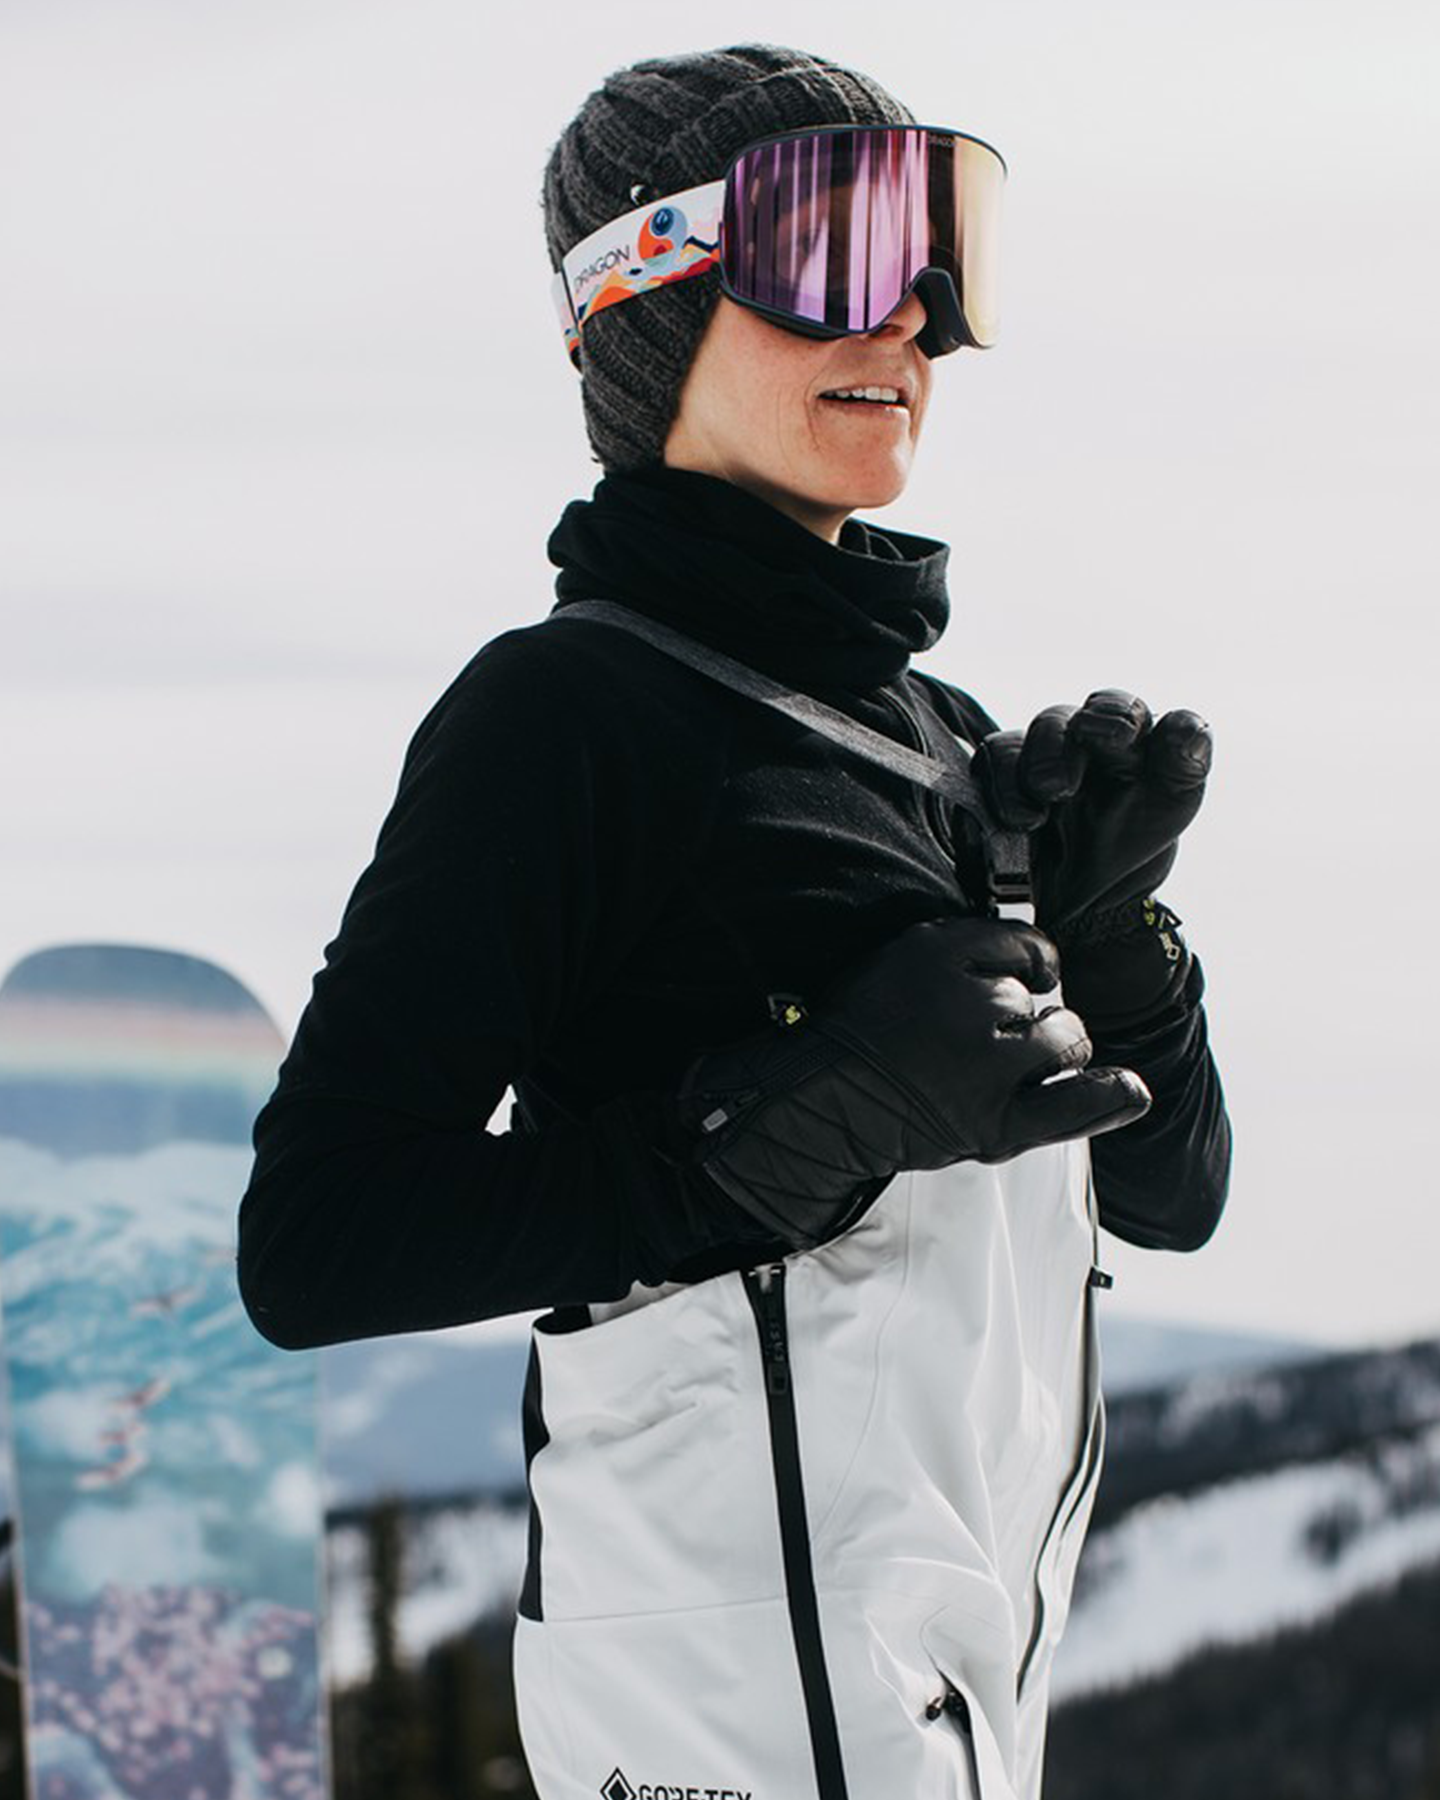 Burton Women's [ak]® Kimmy Gore‑Tex 3L Stretch Bib Snow Pants - Gray Cloud Women's Snow Bibs - Trojan Wake Ski Snow